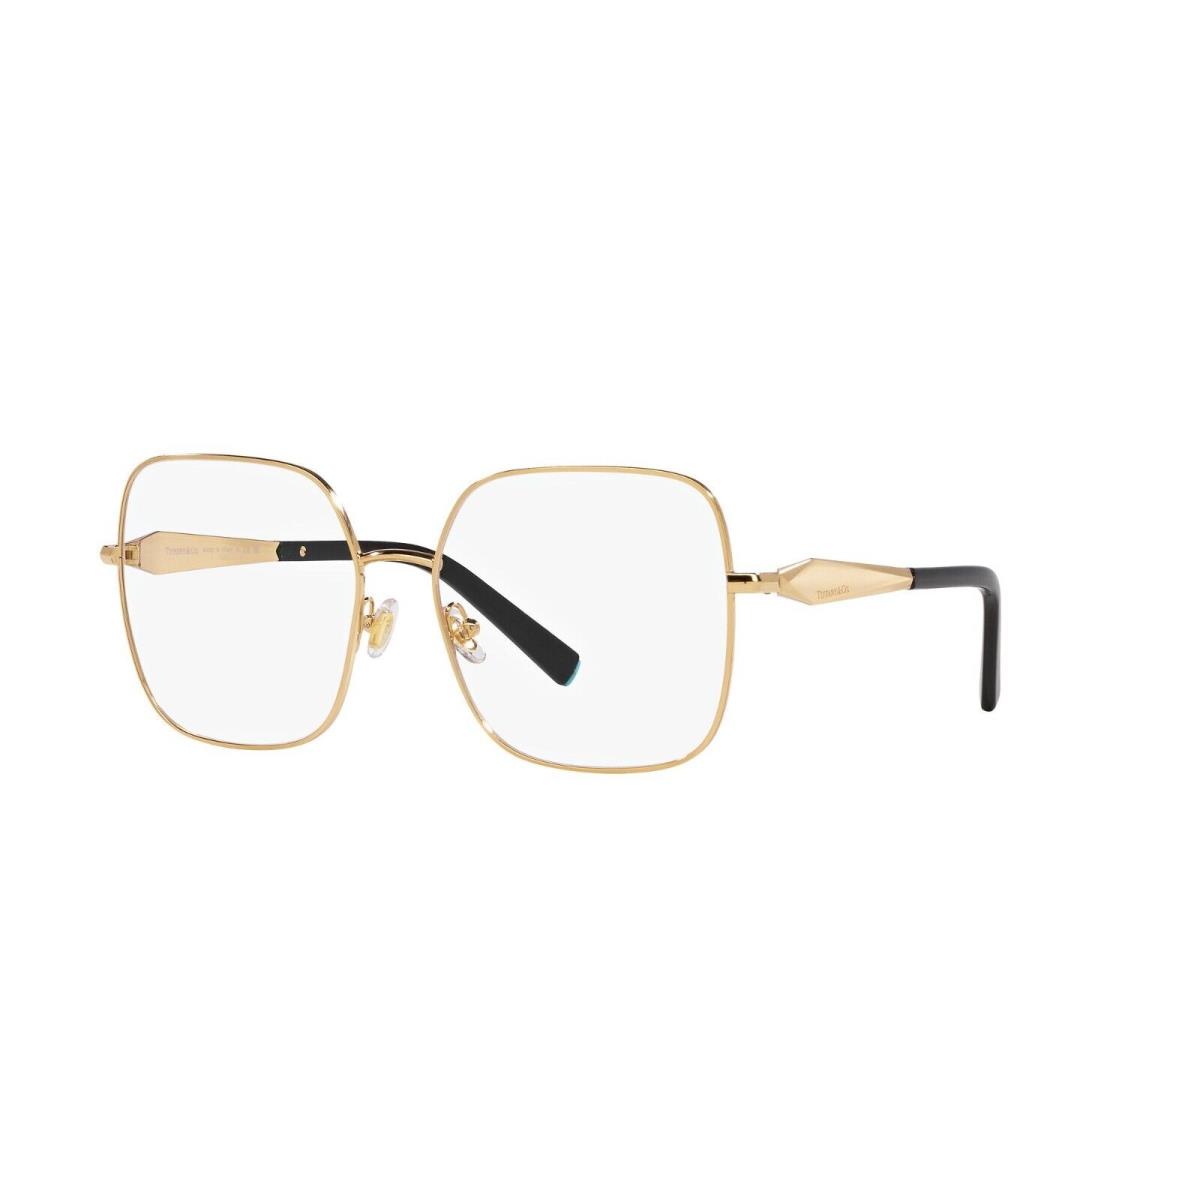 Tiffany TF 1151 Gold 6002 Eyeglasses